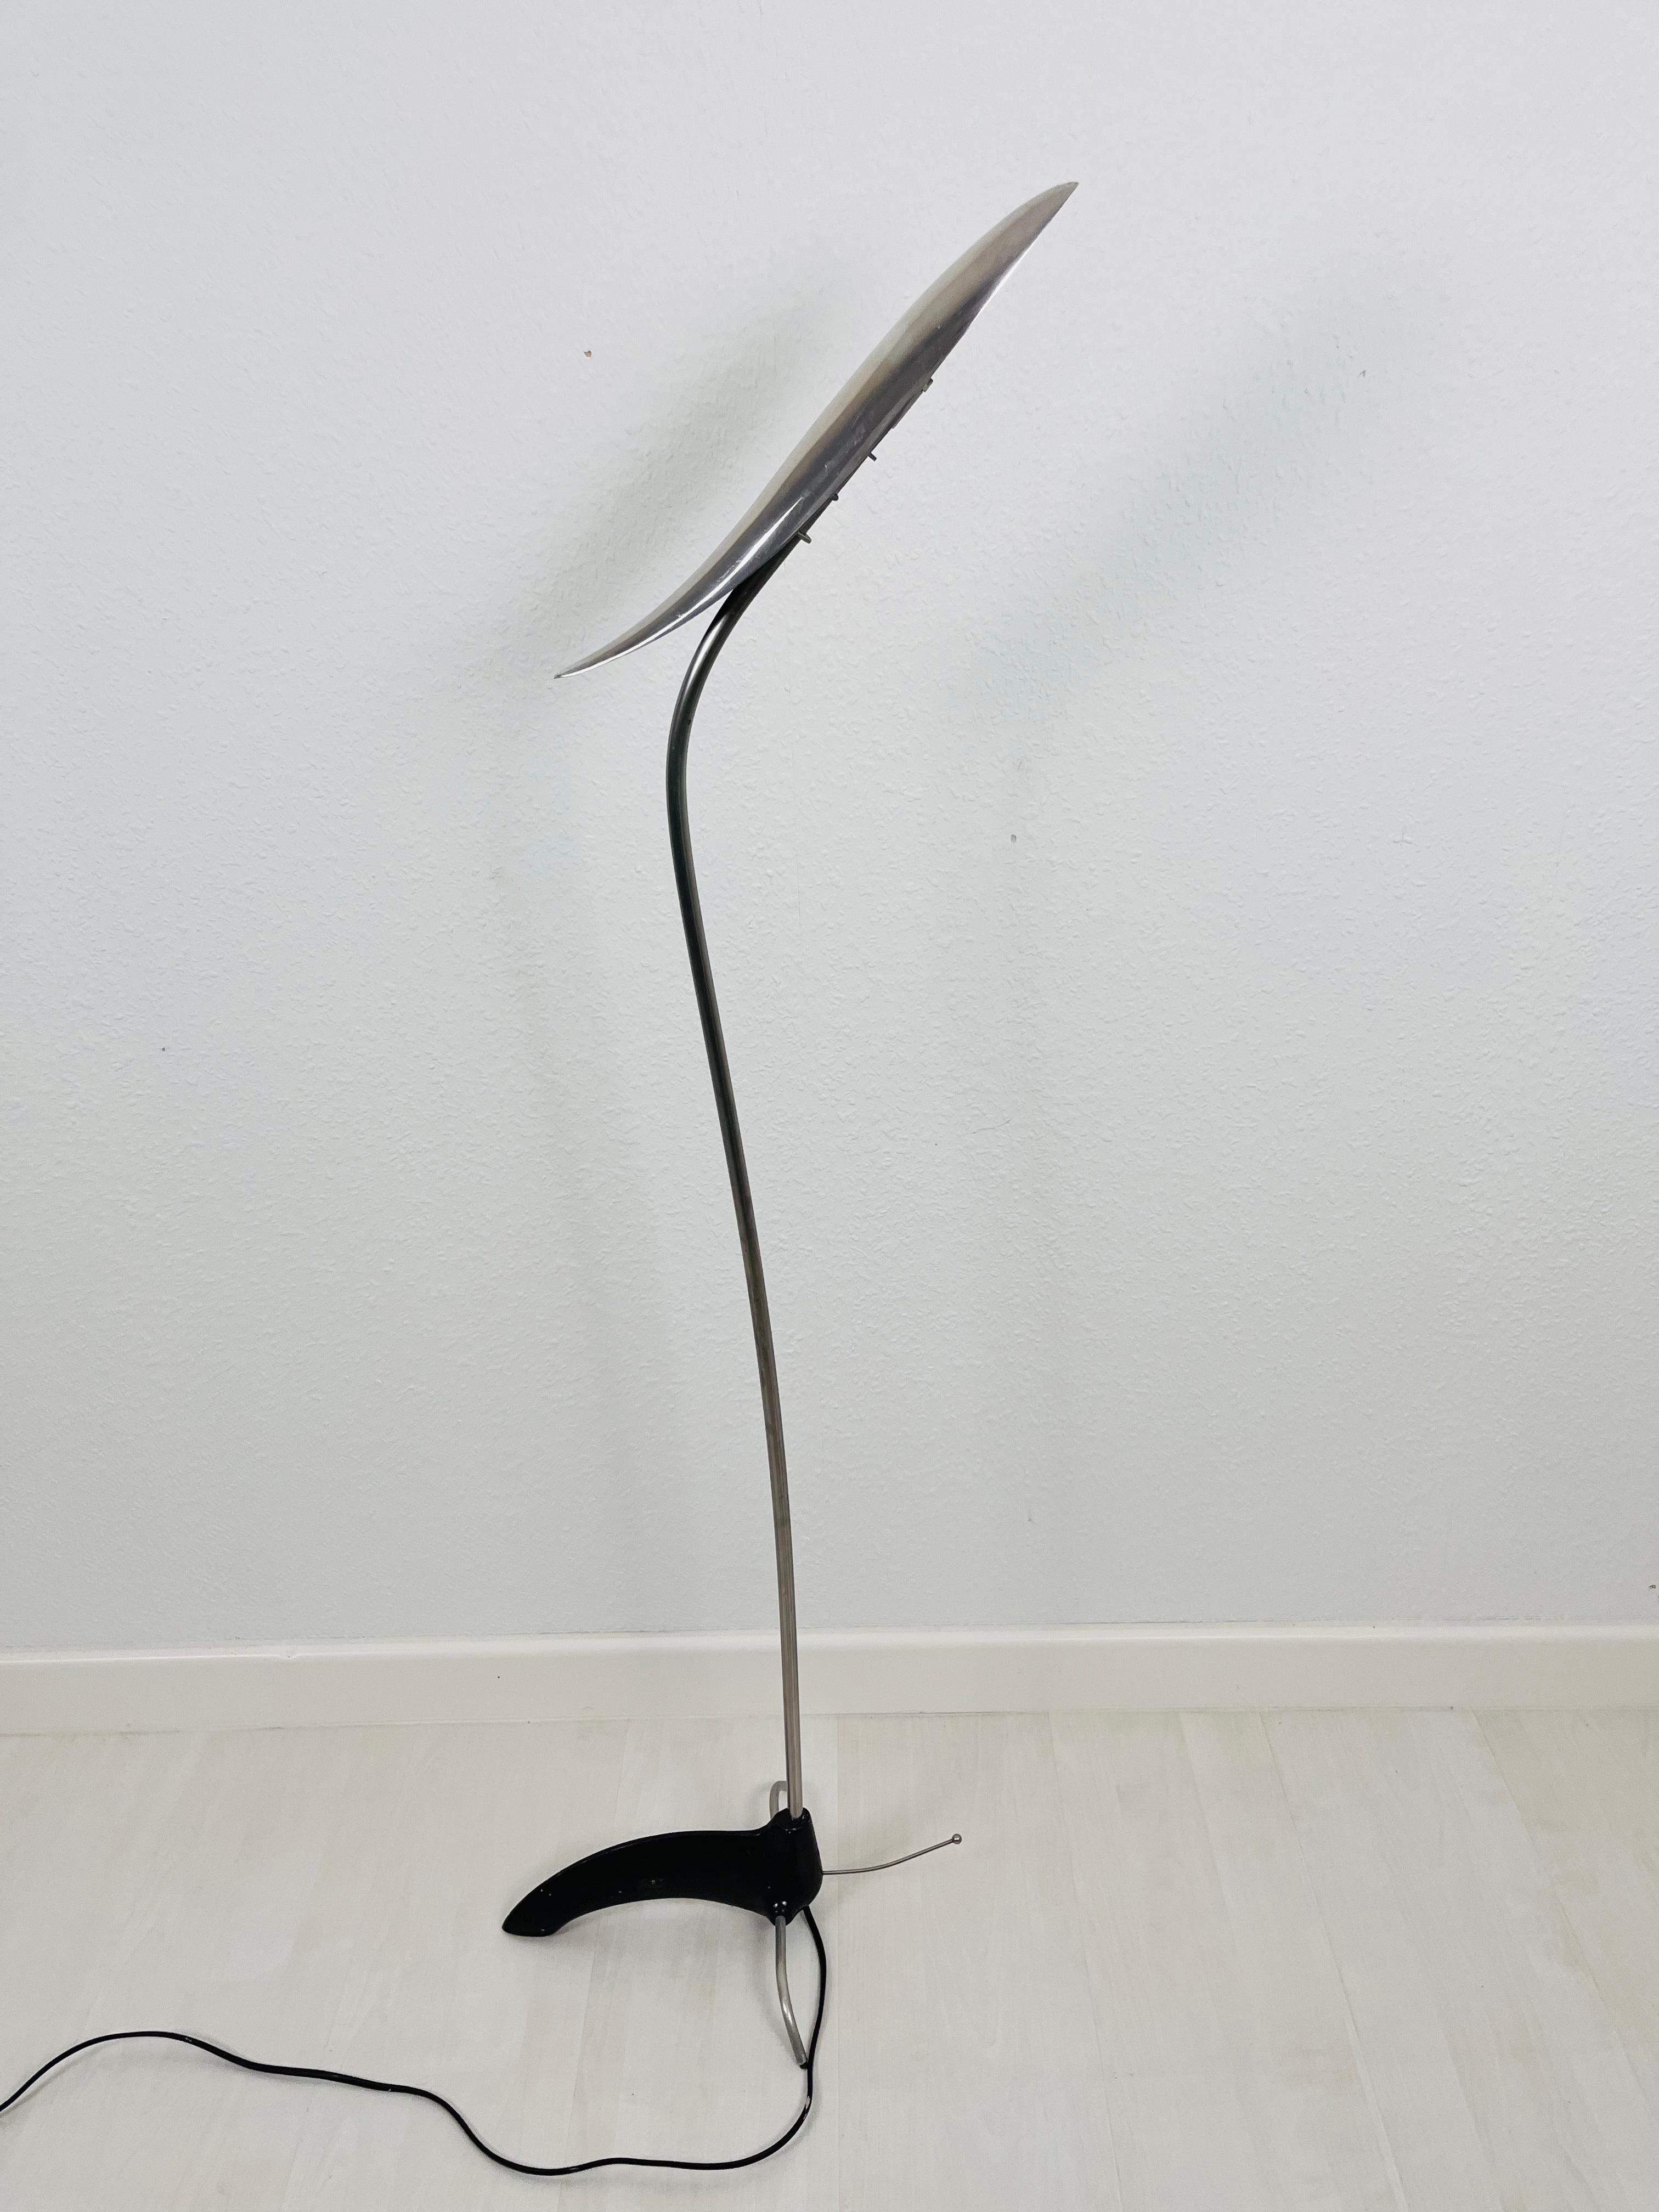 Un lampadaire chromé fabriqué en Allemagne dans les années 1970. Il est fascinant par son design particulier. La lampe est fabriquée entièrement en aluminium, y compris l'abat-jour.

Fonctionne avec les deux 120/220 V. Bon état vintage.

Expédition